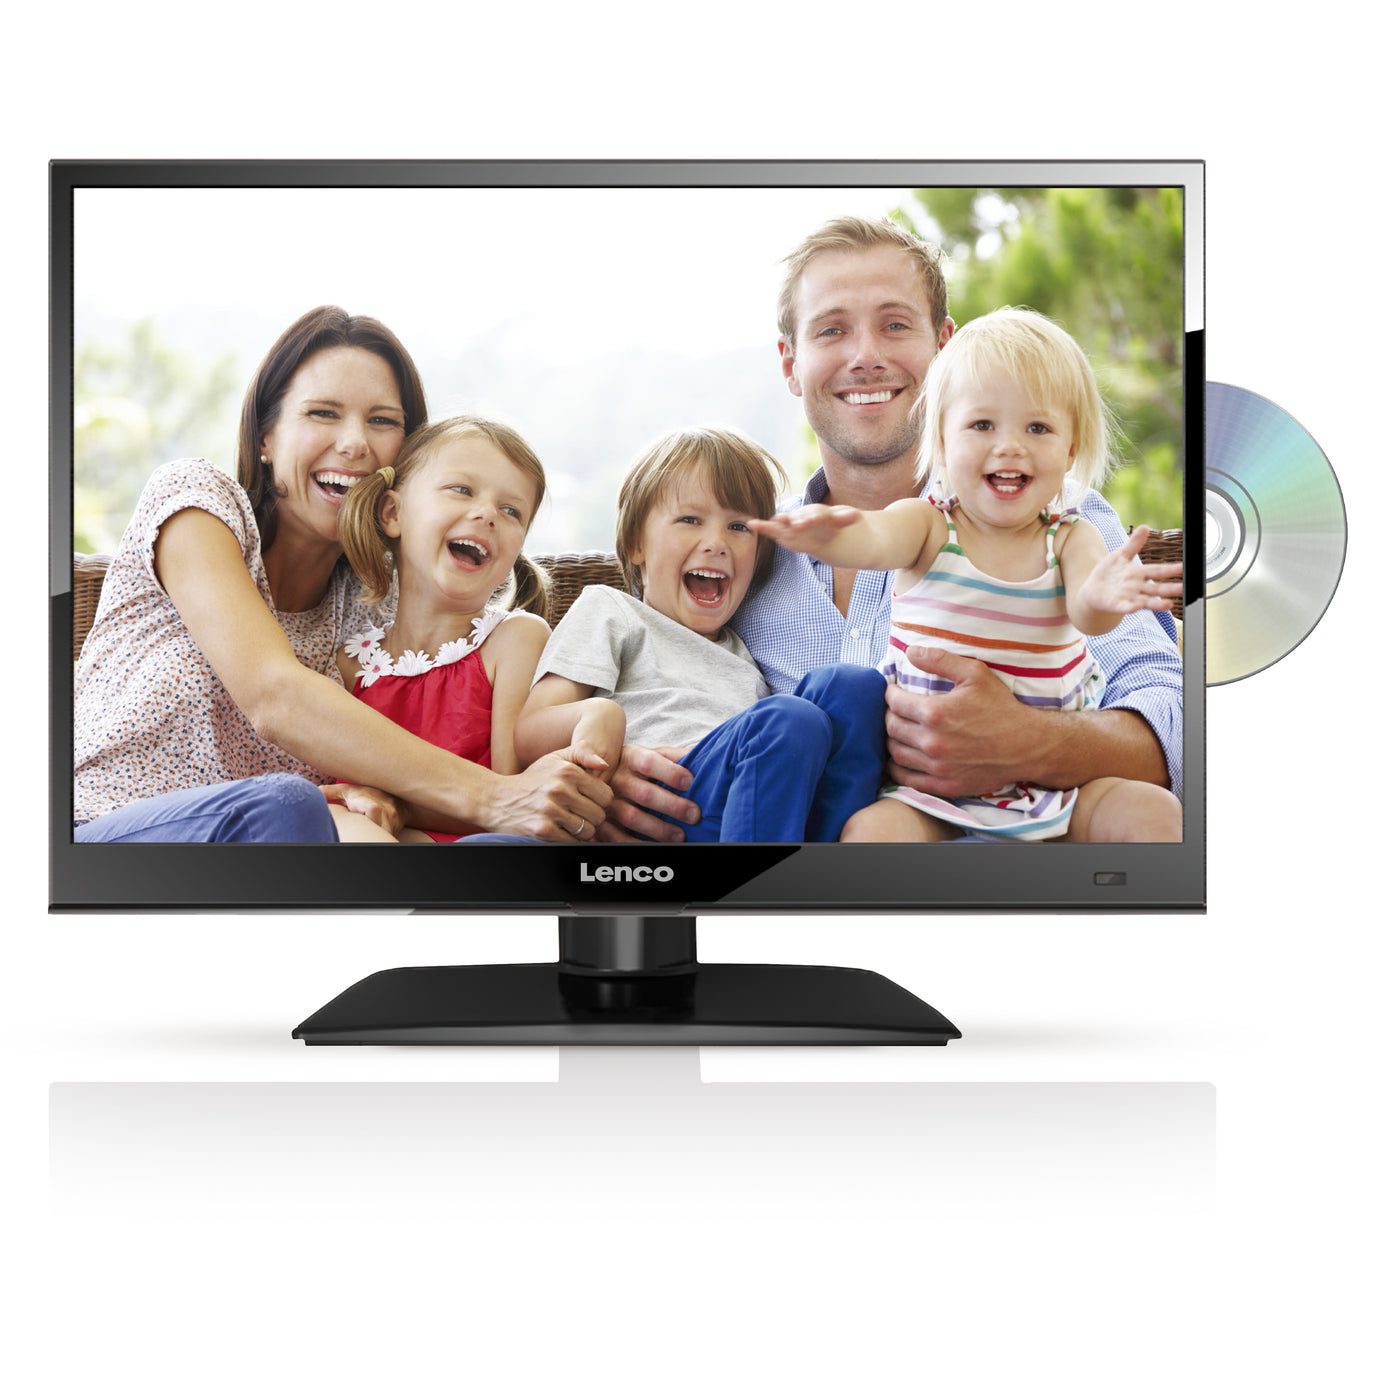 LENCO DVL-1662BK - HD LED TV 16" DVB-T/T2/S2/C Ingebouwde DVD speler - Zwart